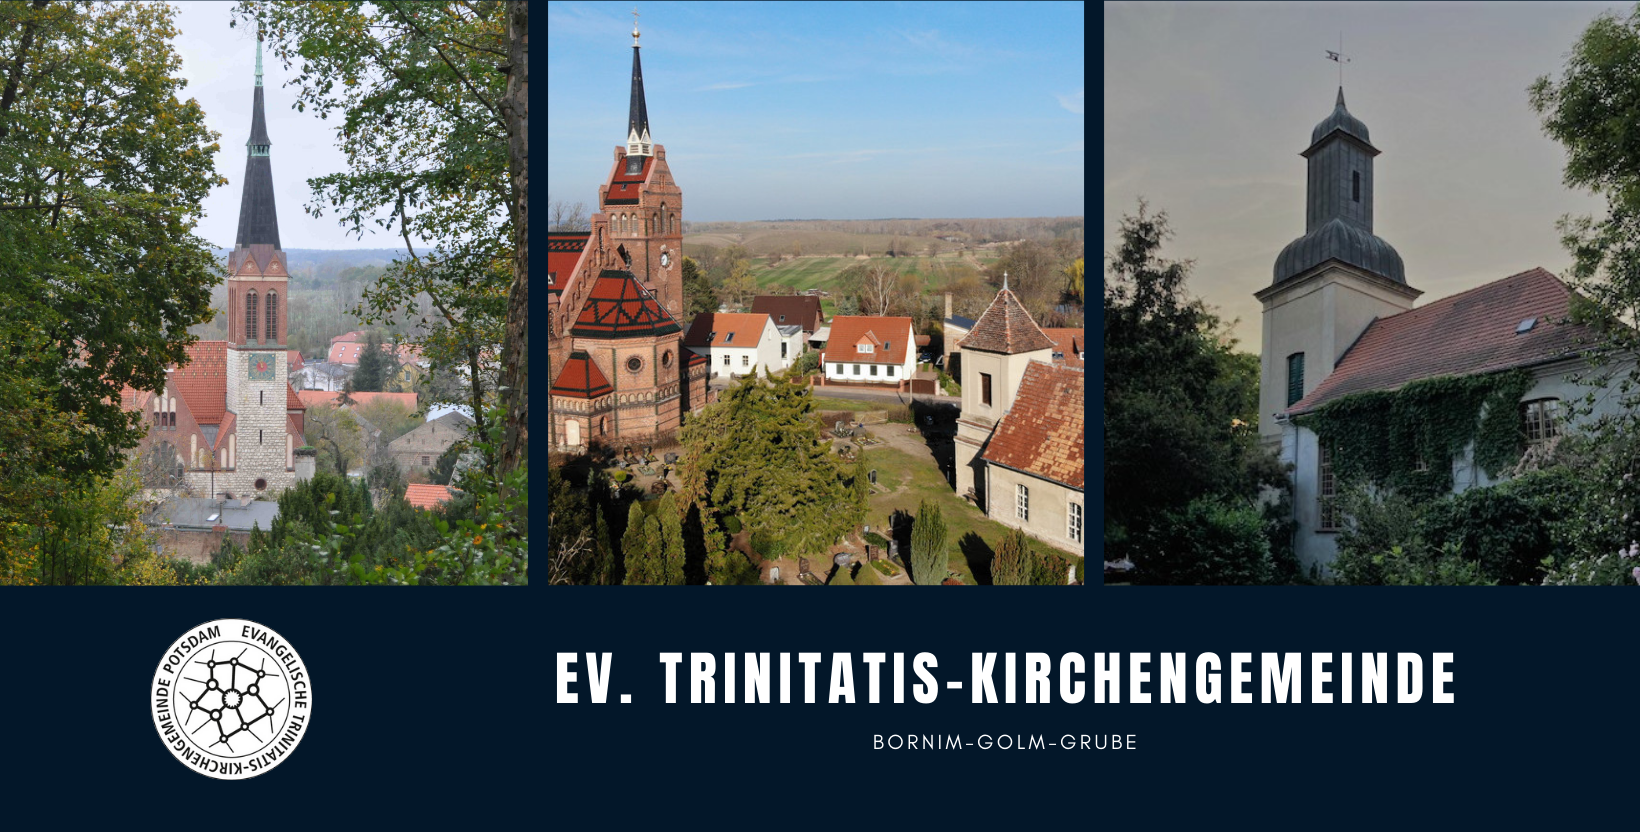 Bild mit der Aufschrift "Ev. Trinitatis-Kirchengemeinde Potsdam" und dem Untertitel "Bornim-Golm-Grube". Auf dem Header-Bild sind die Kirchen Bornim, Golm und Grube nebeneinander abgebildet.